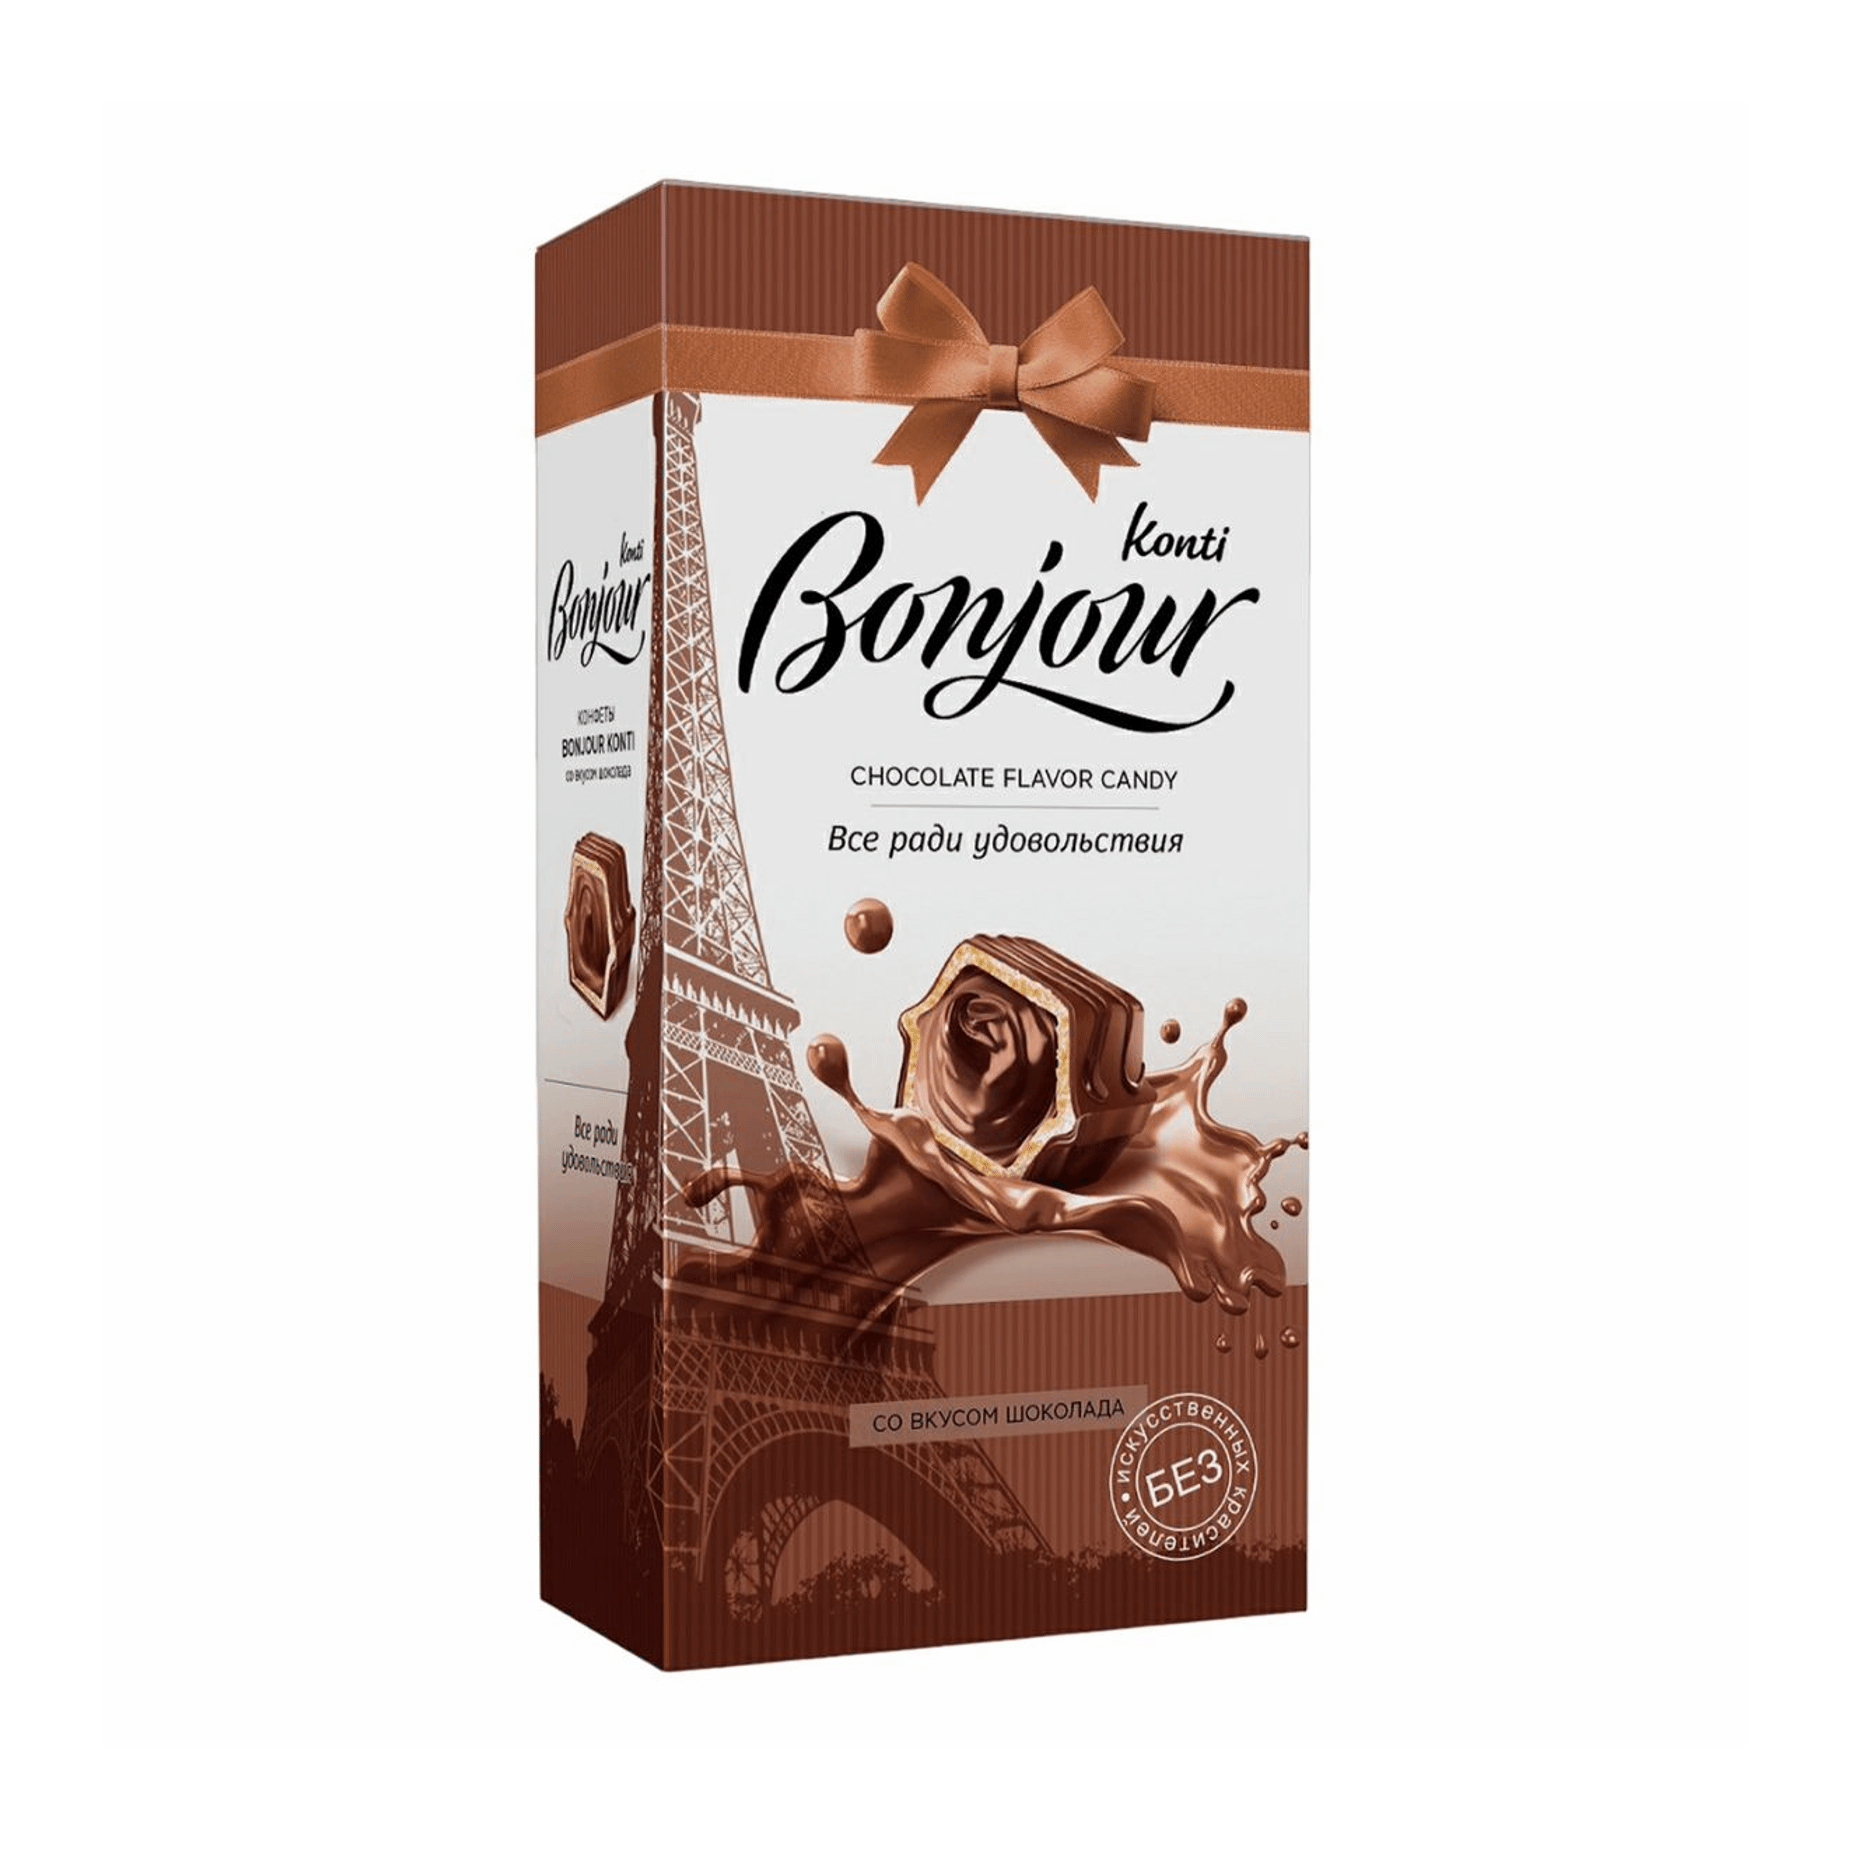 конфеты konti шоколадные истории джек с вафельной крошкой 250 г Конфеты шоколадные Konti Bonjour со вкусом шоколада 80 г